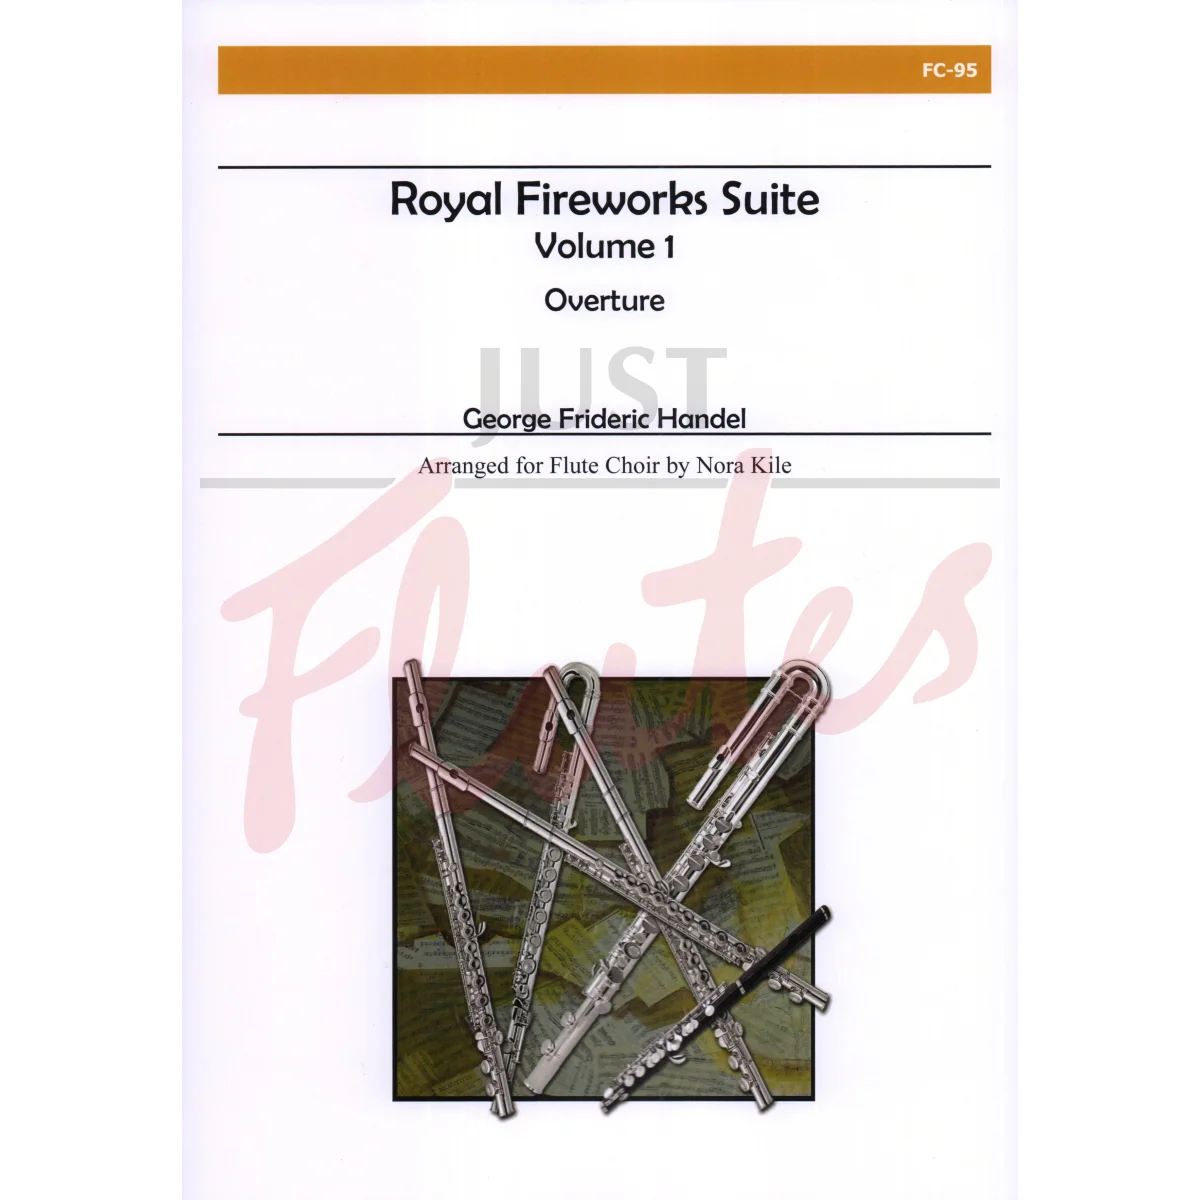 Royal Fireworks Suite, Vol 1: Overture for Flute Choir